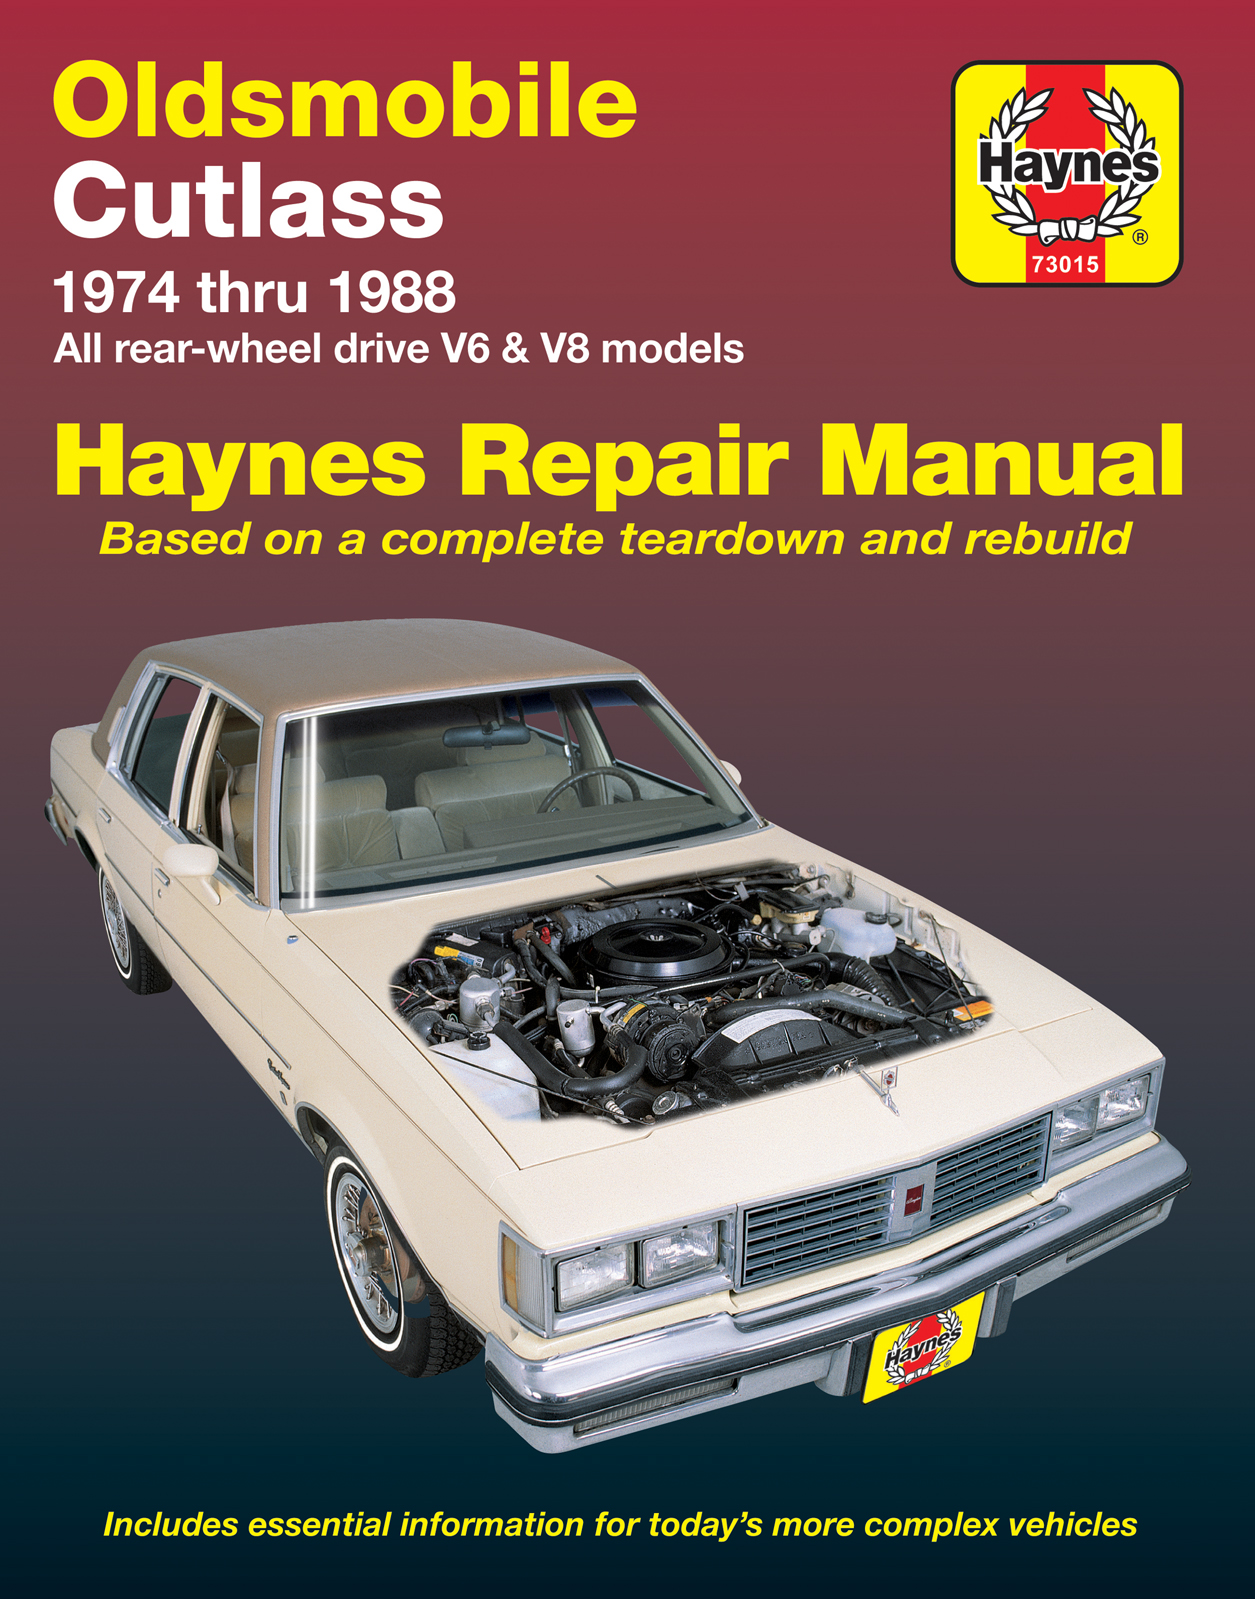 Haynes Workshop Manual Oldsmobile Cutlass 1974-1988 Service Repair Manual 